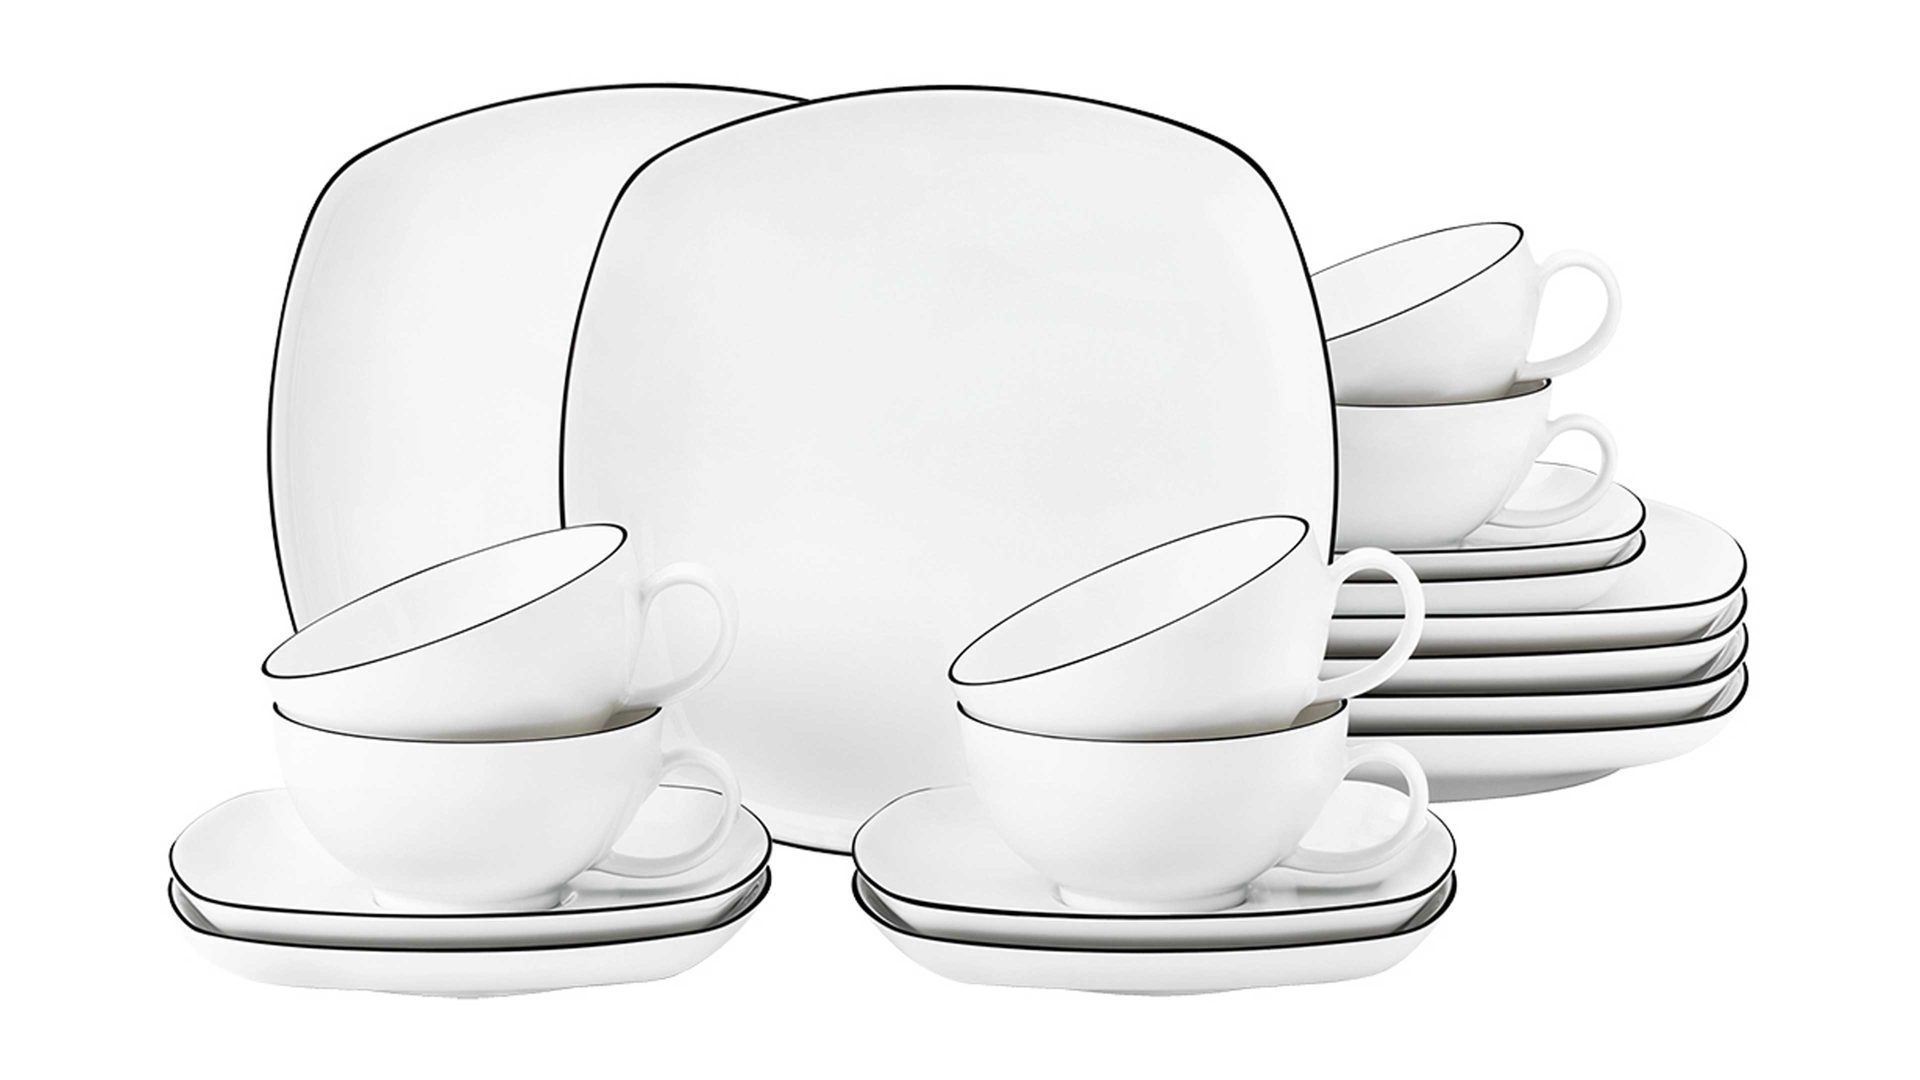 Teeservice Seltmann aus Porzellan in Weiß Seltmann Teeservice Lido mit eckigen Tellern weißes Porzellan - 18-teilig, kleine Tassen